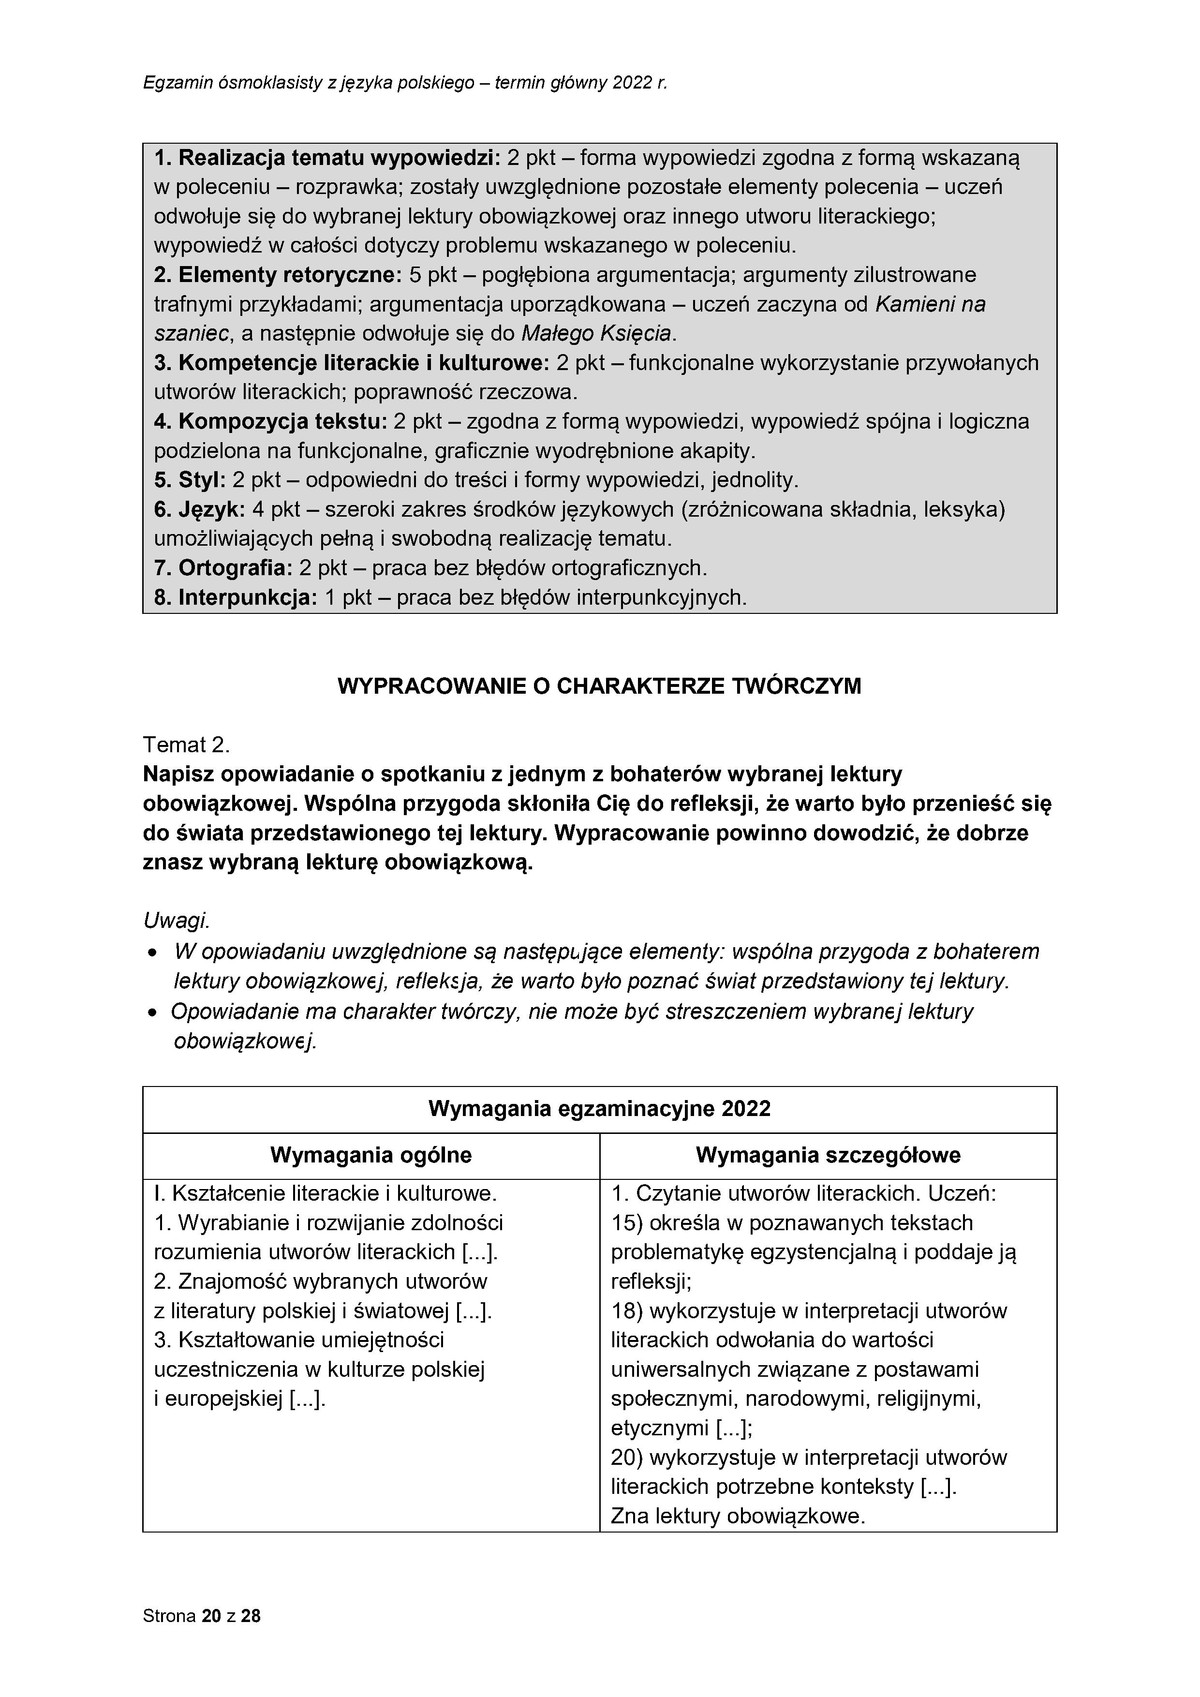 zasady oceniania - odpowiedzi - język polski - egzamin ósmoklasisty 2022 - 0020